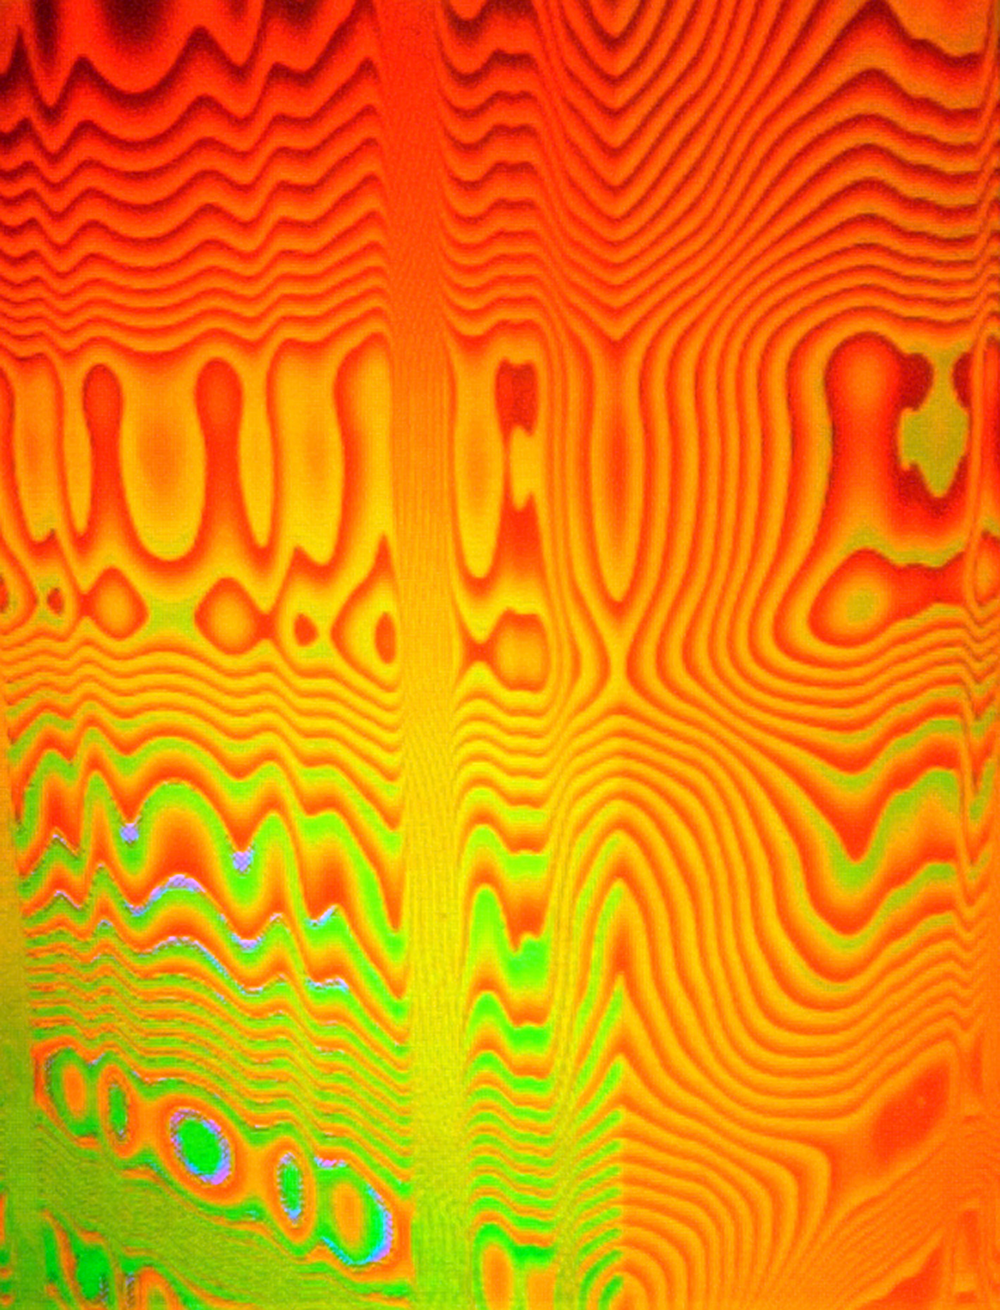 Waldemar Mattis-Teutsch - Dot Matrix 05, Hologram, W:30 cm x H:40 cm, 2003